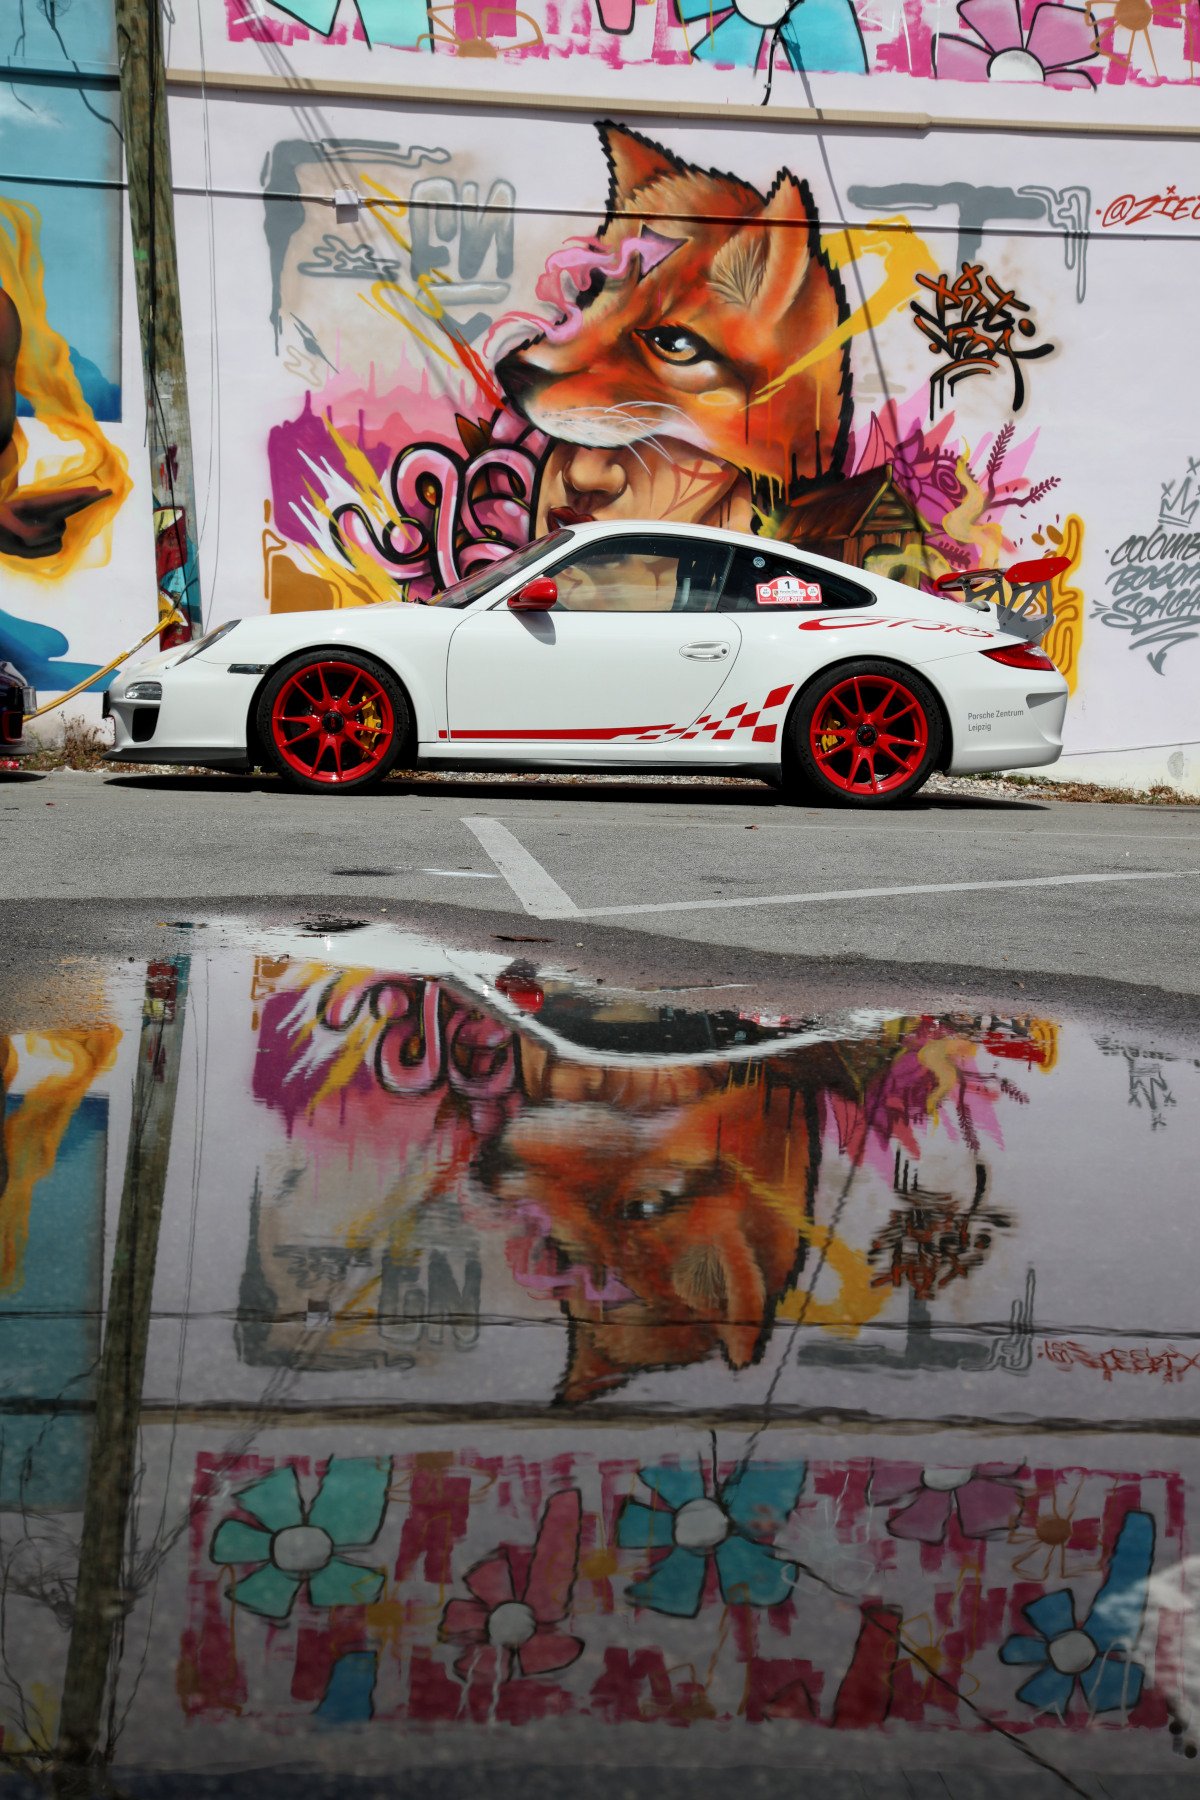 Porsche 997.2 GT3 RS in front of graffiti in Miami